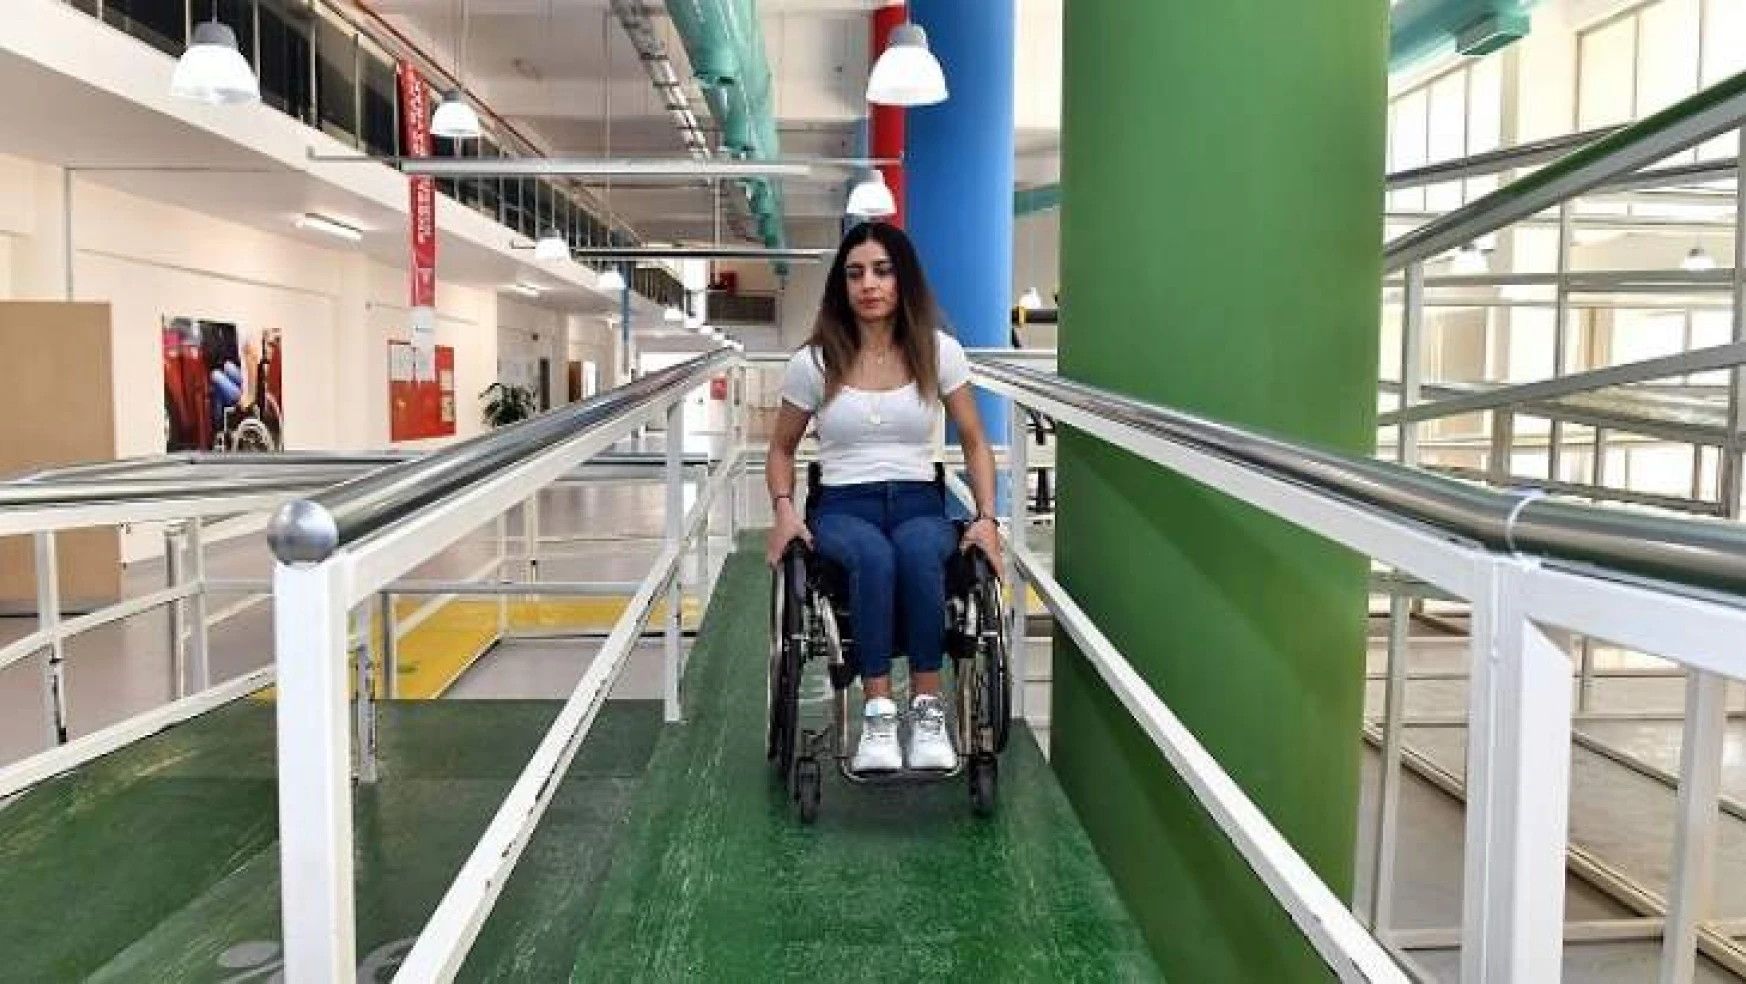 Türkiye'nin ilk 'Engelli Farkındalık Merkezi'ne tam not